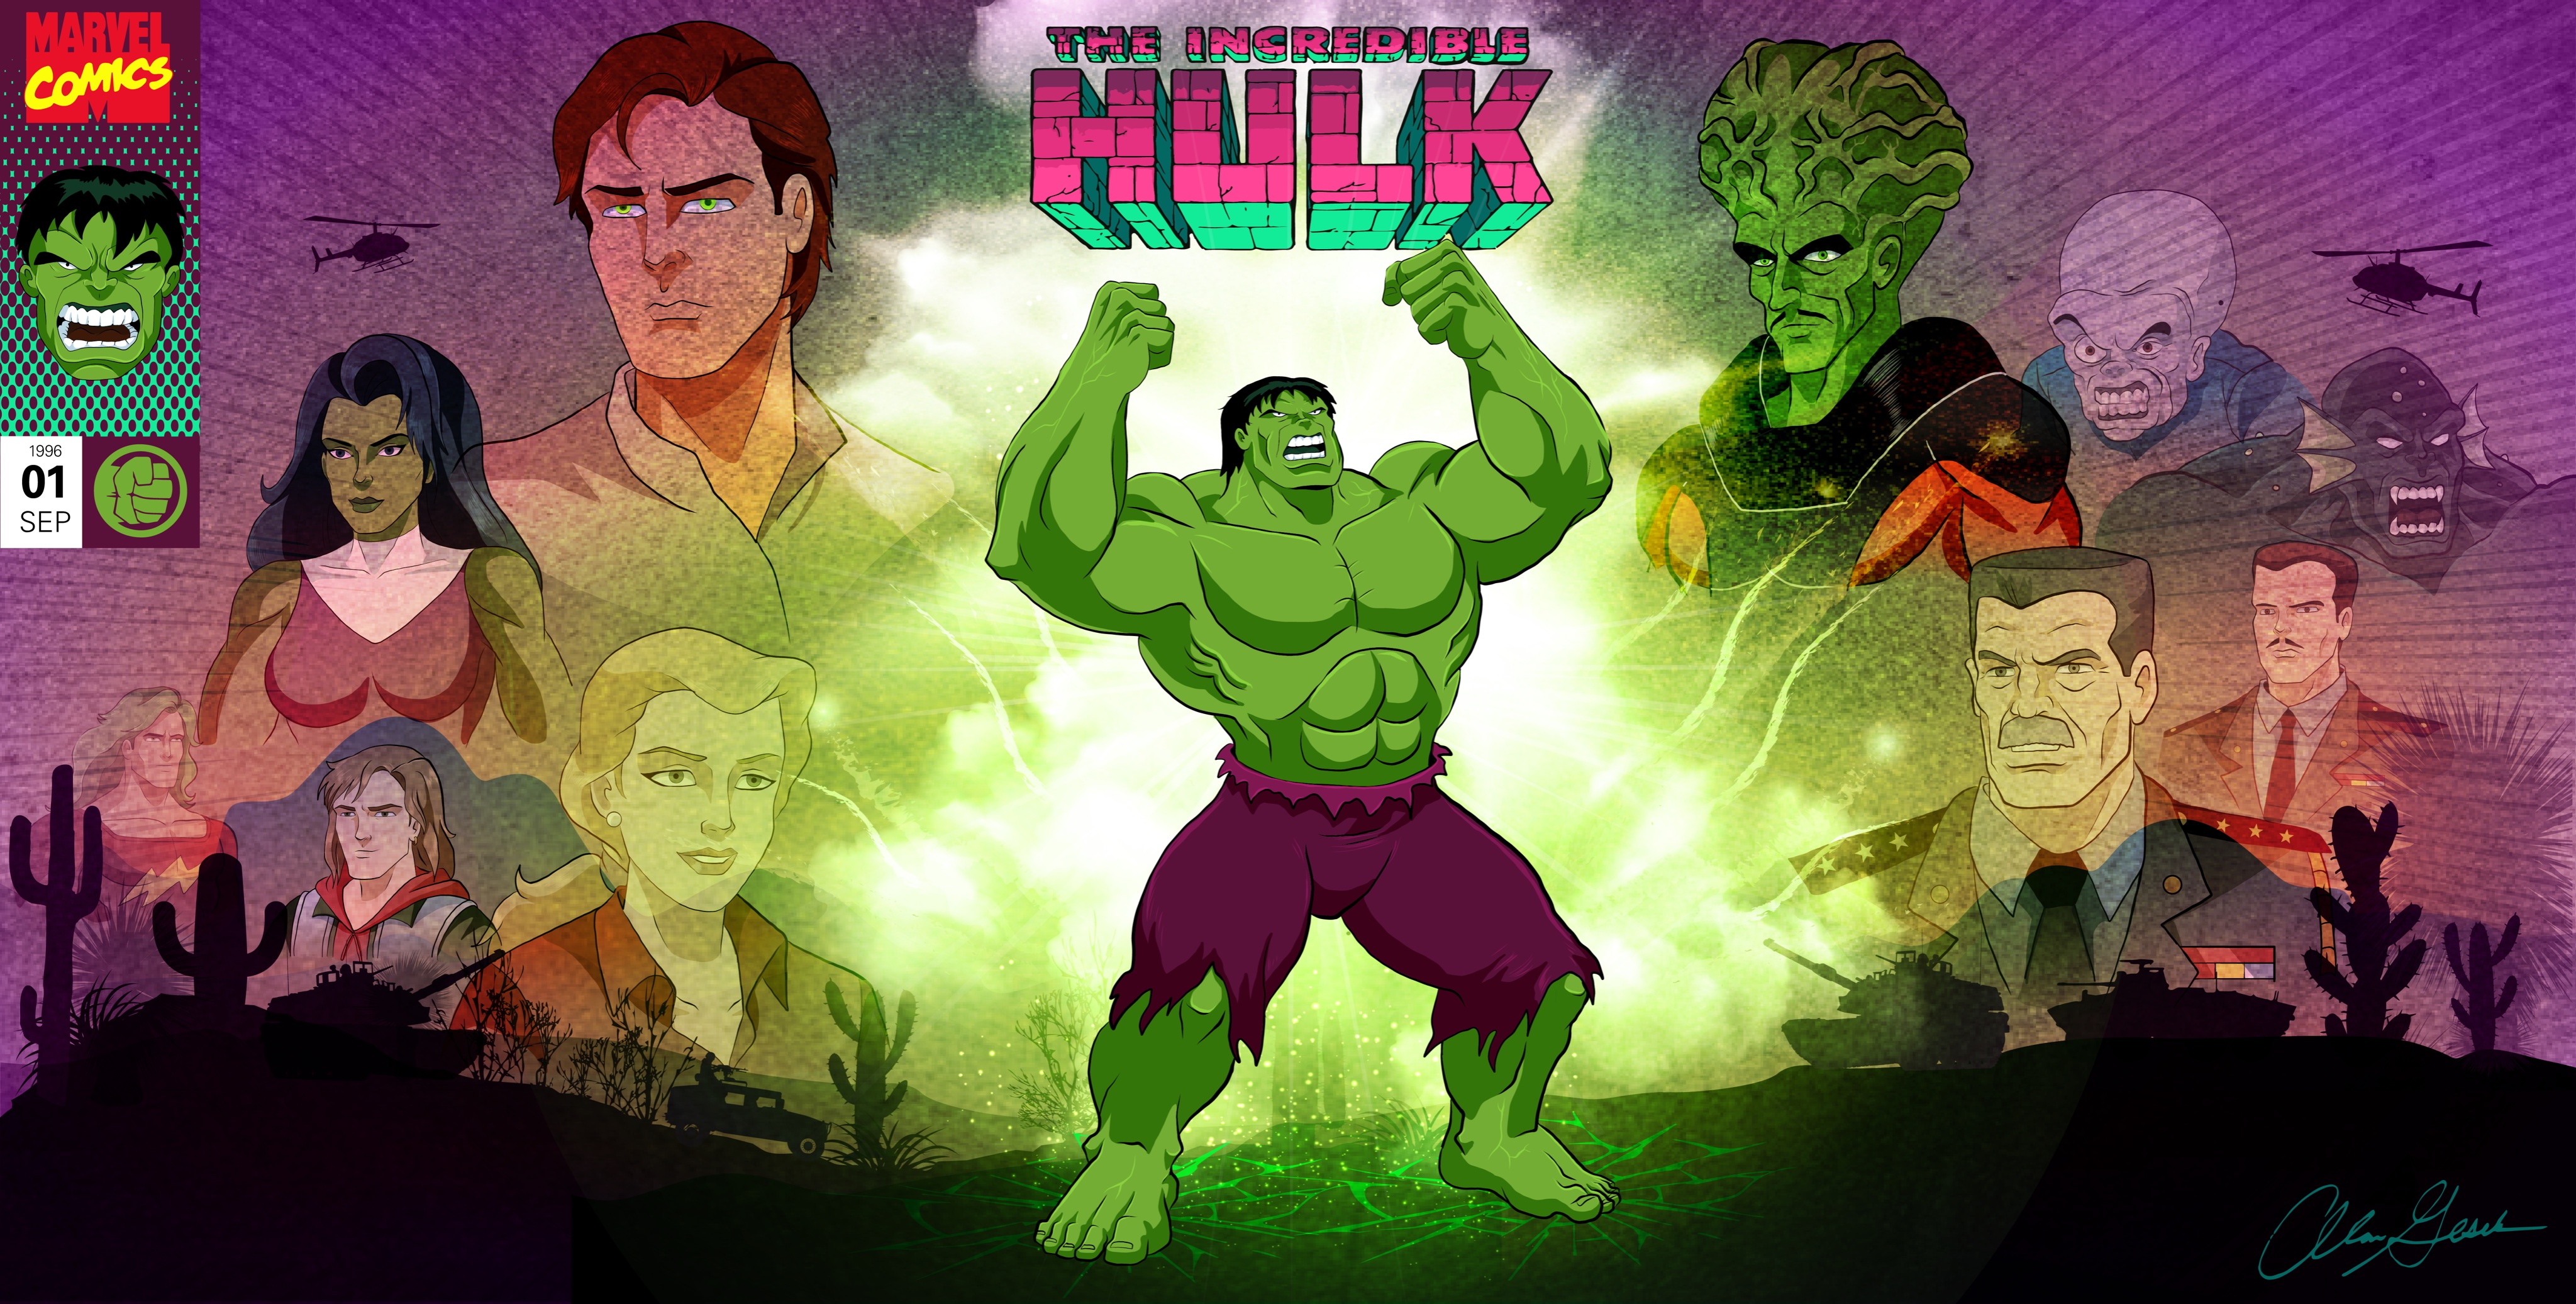 Doc Samson (John Byrne) by xts33 on DeviantArt | Hulk marvel, Marvel comics  art, Defenders marvel